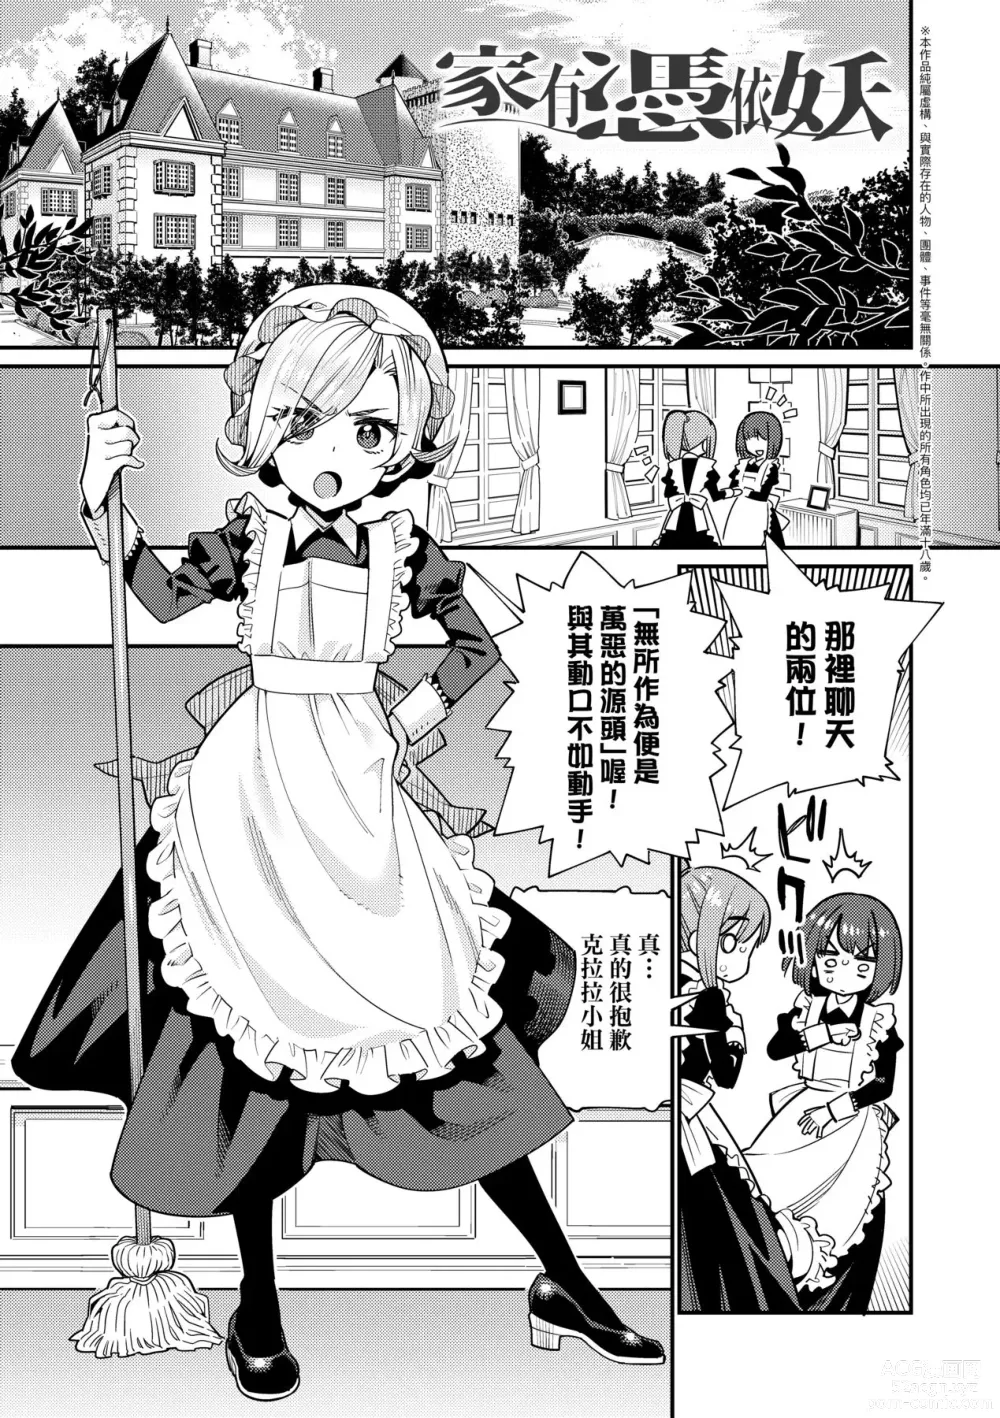 Page 6 of manga Itoshiki Wagaya (decensored)